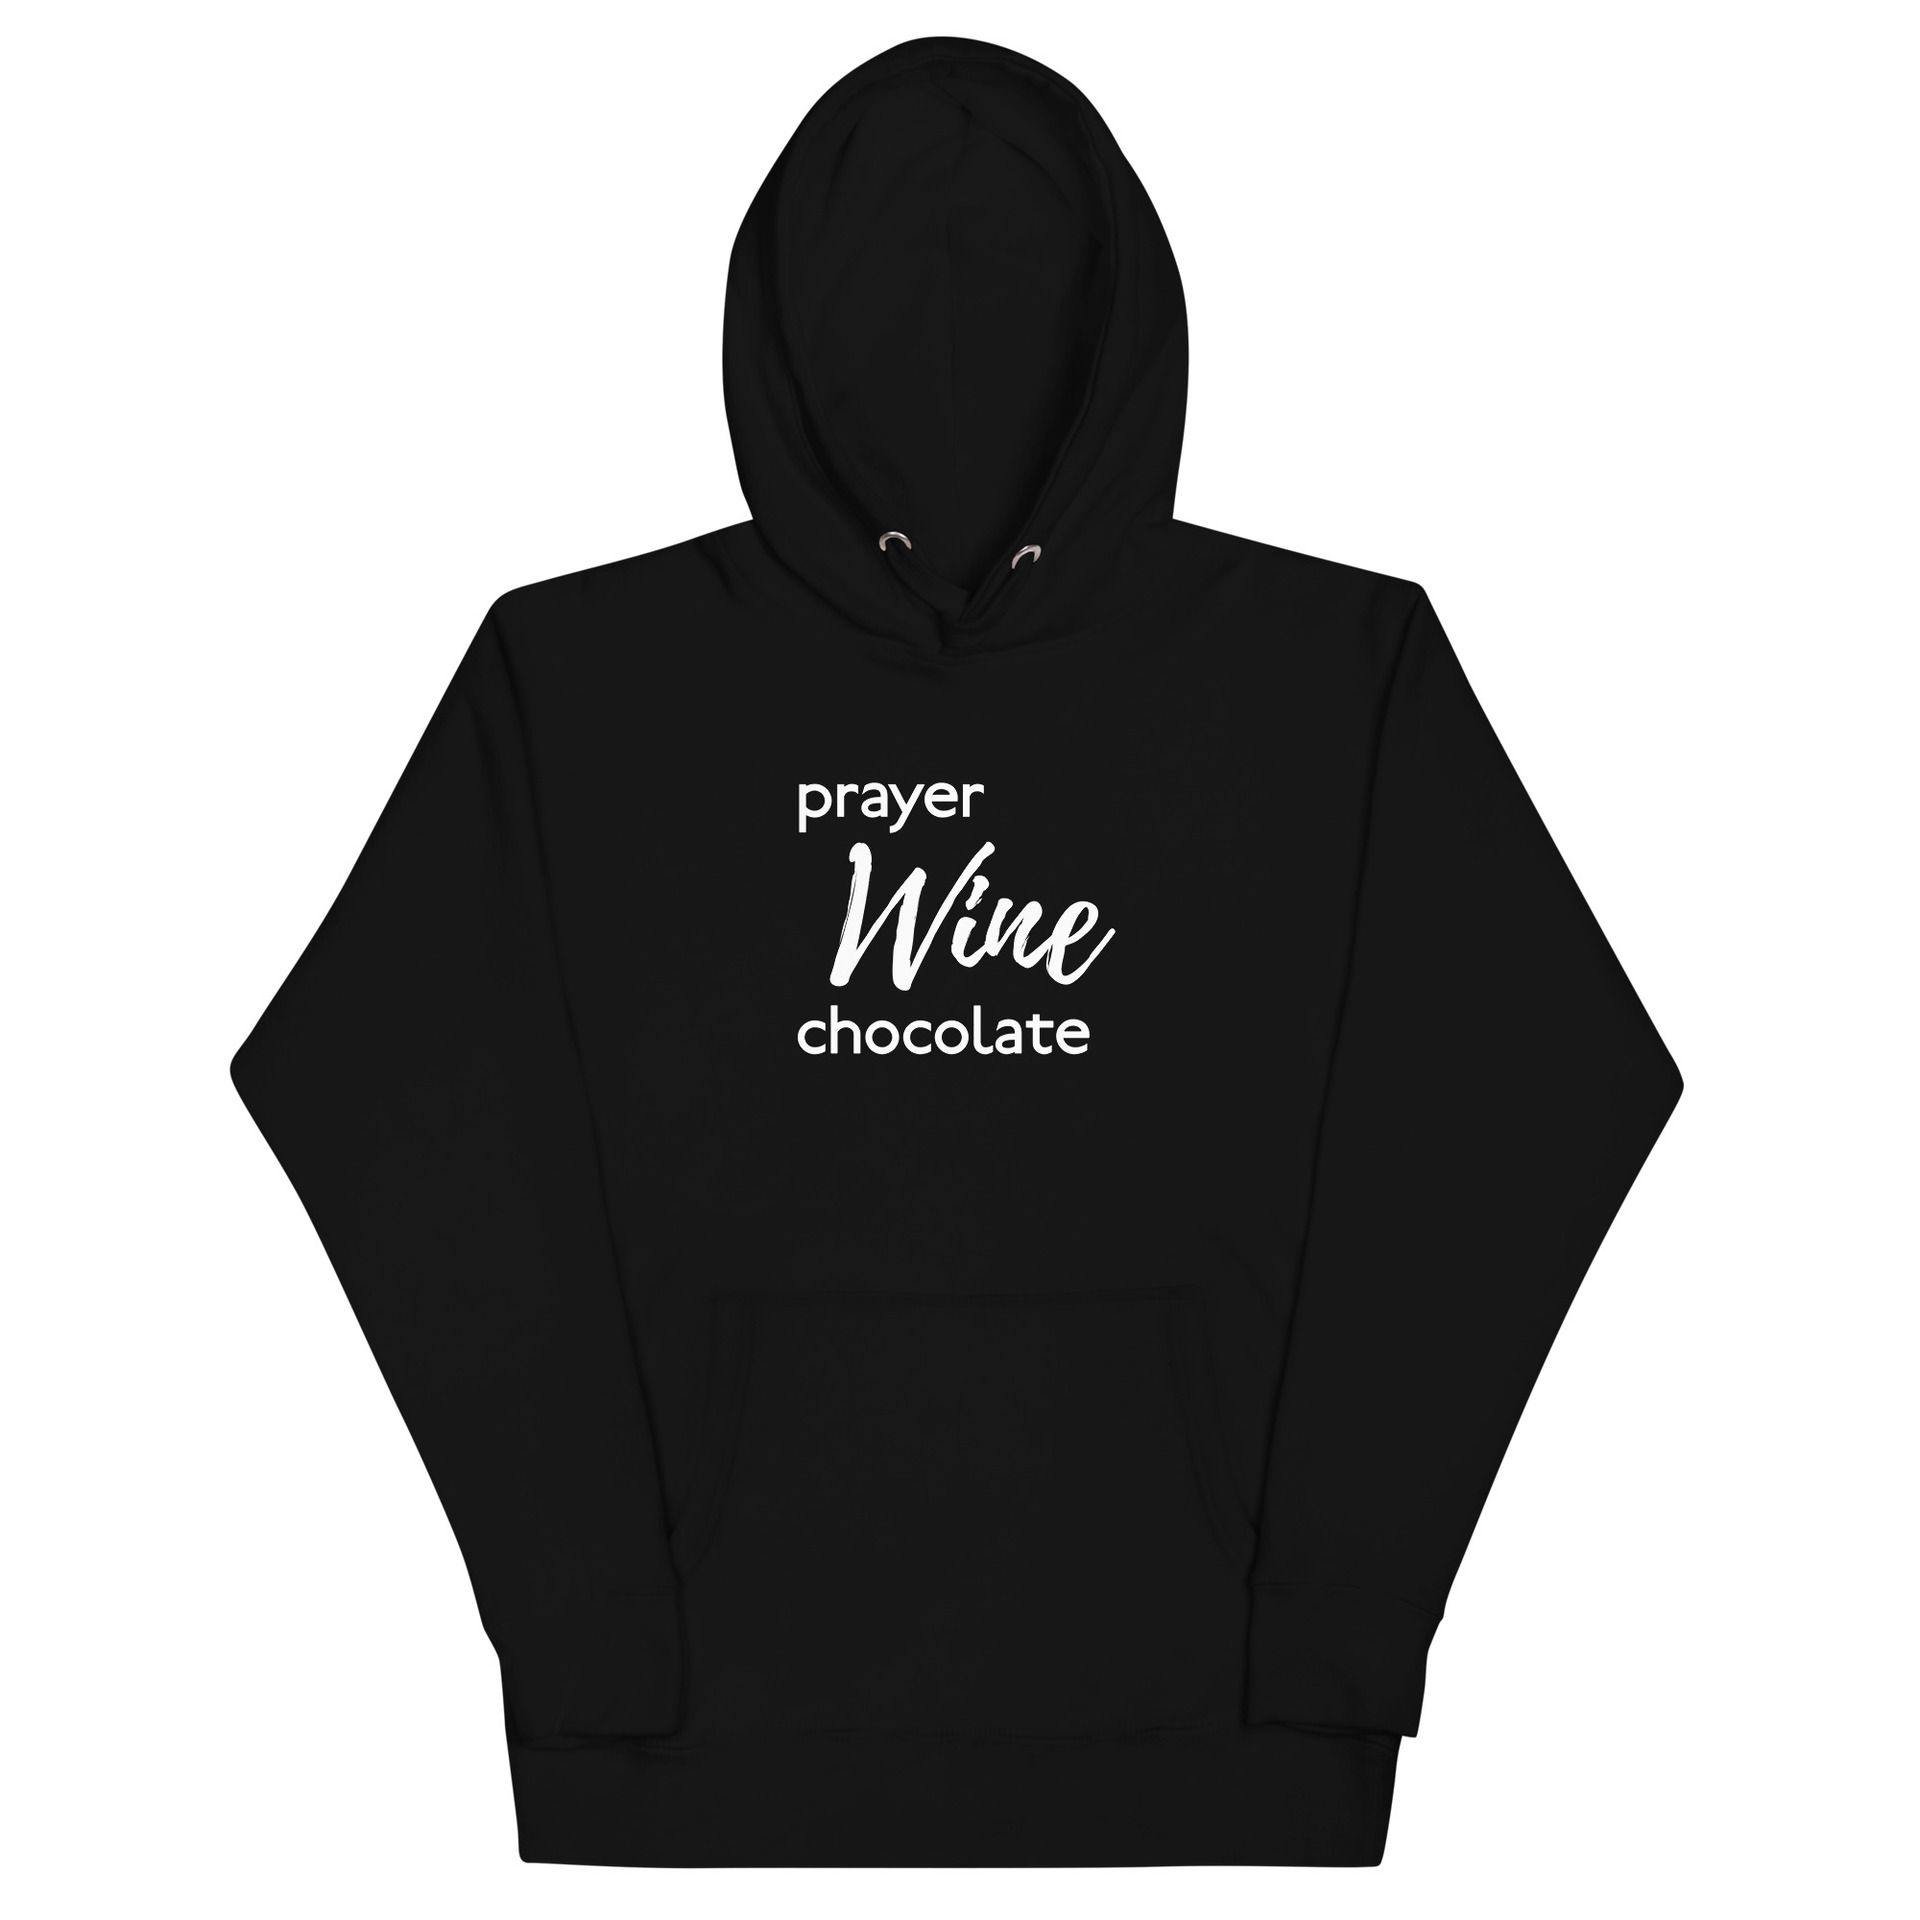 Prayer Wine Chocolate hooded sweatshirt
